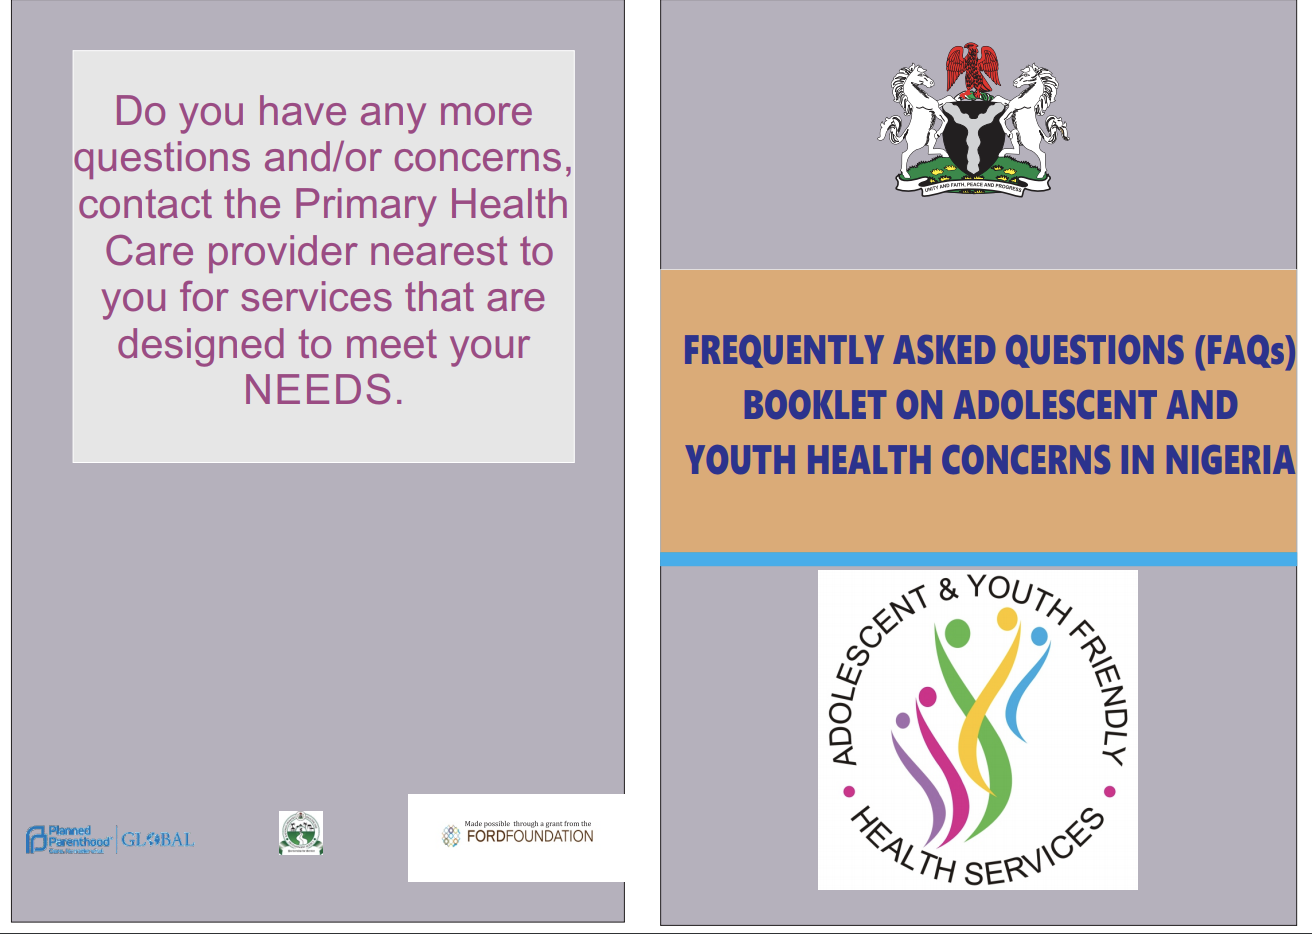 नाइजीरिया में युवा और किशोर स्वास्थ्य चिंताओं पर अक्सर पूछे जाने वाले प्रश्न पुस्तिका